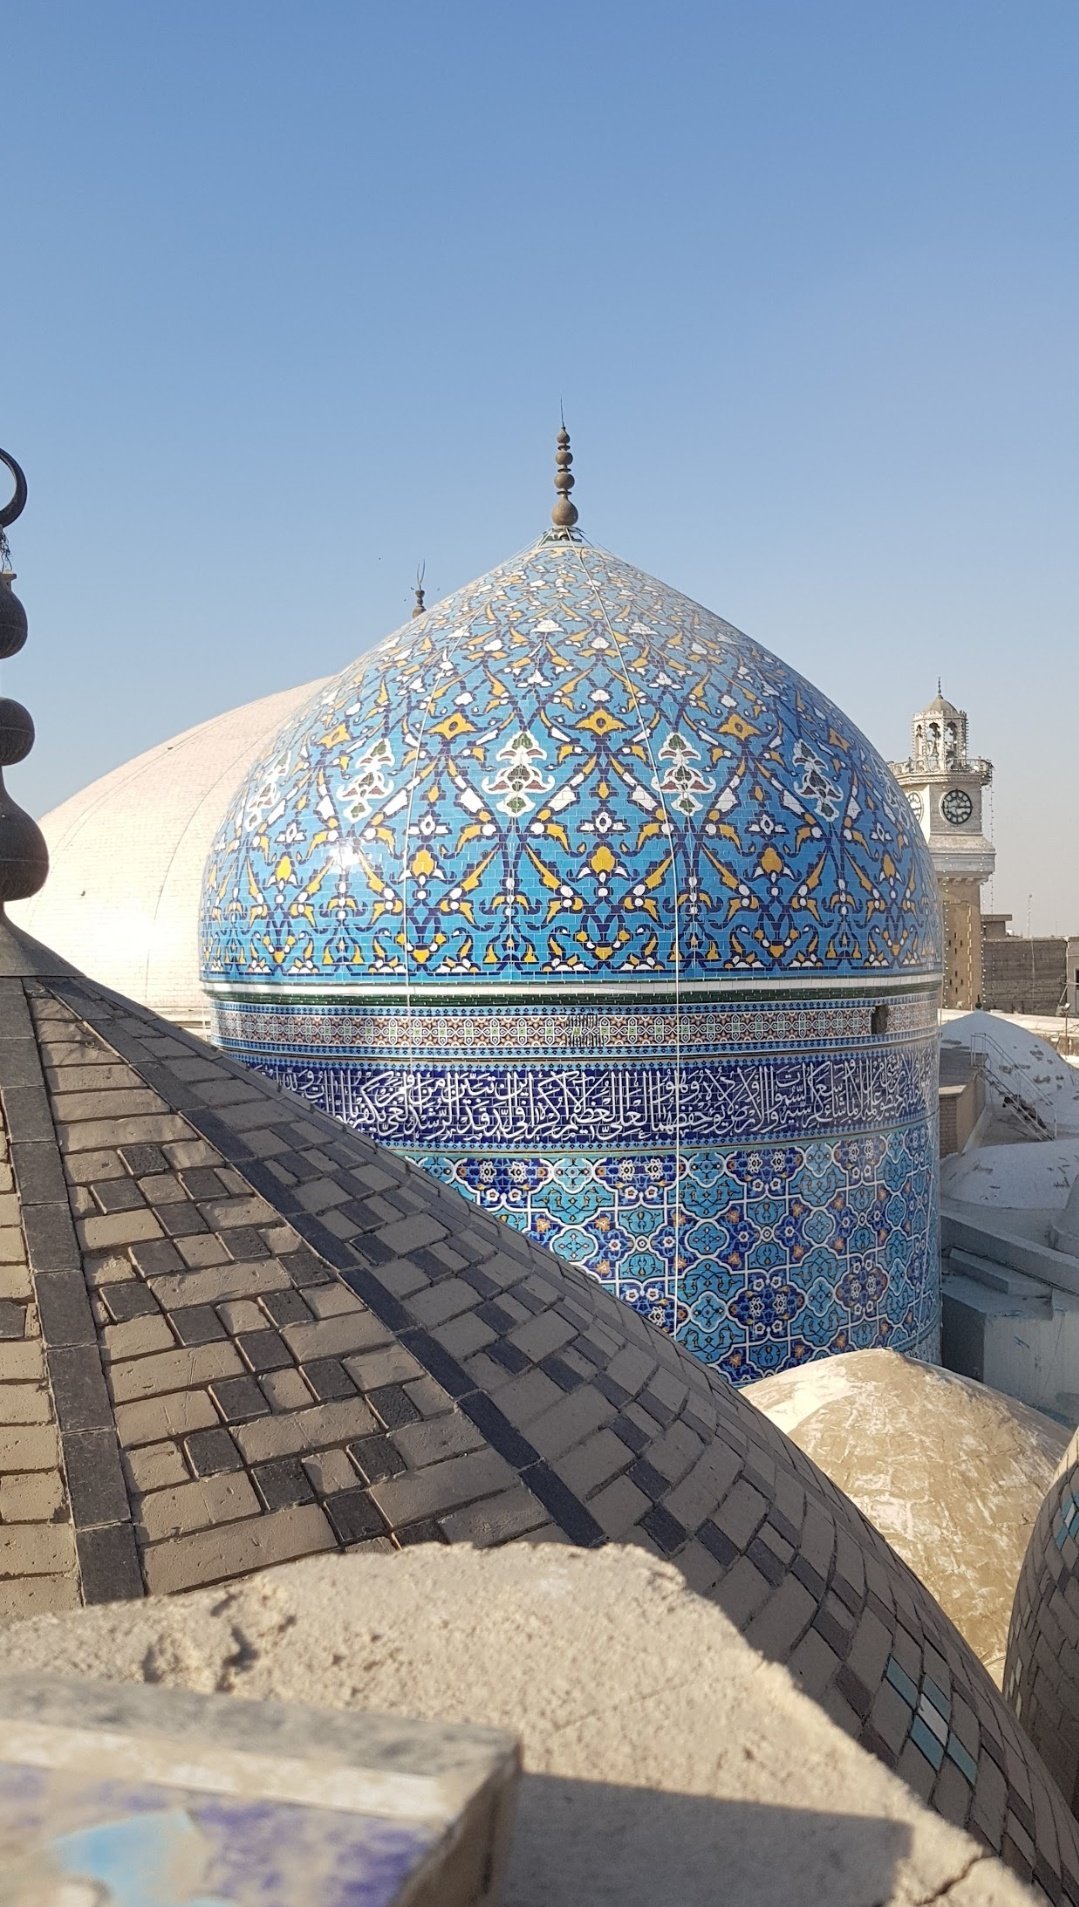 Baghdad Sharif Drone View | Under Construction Shrine of Sheikh Abdul Qadir  Jilani - YouTube